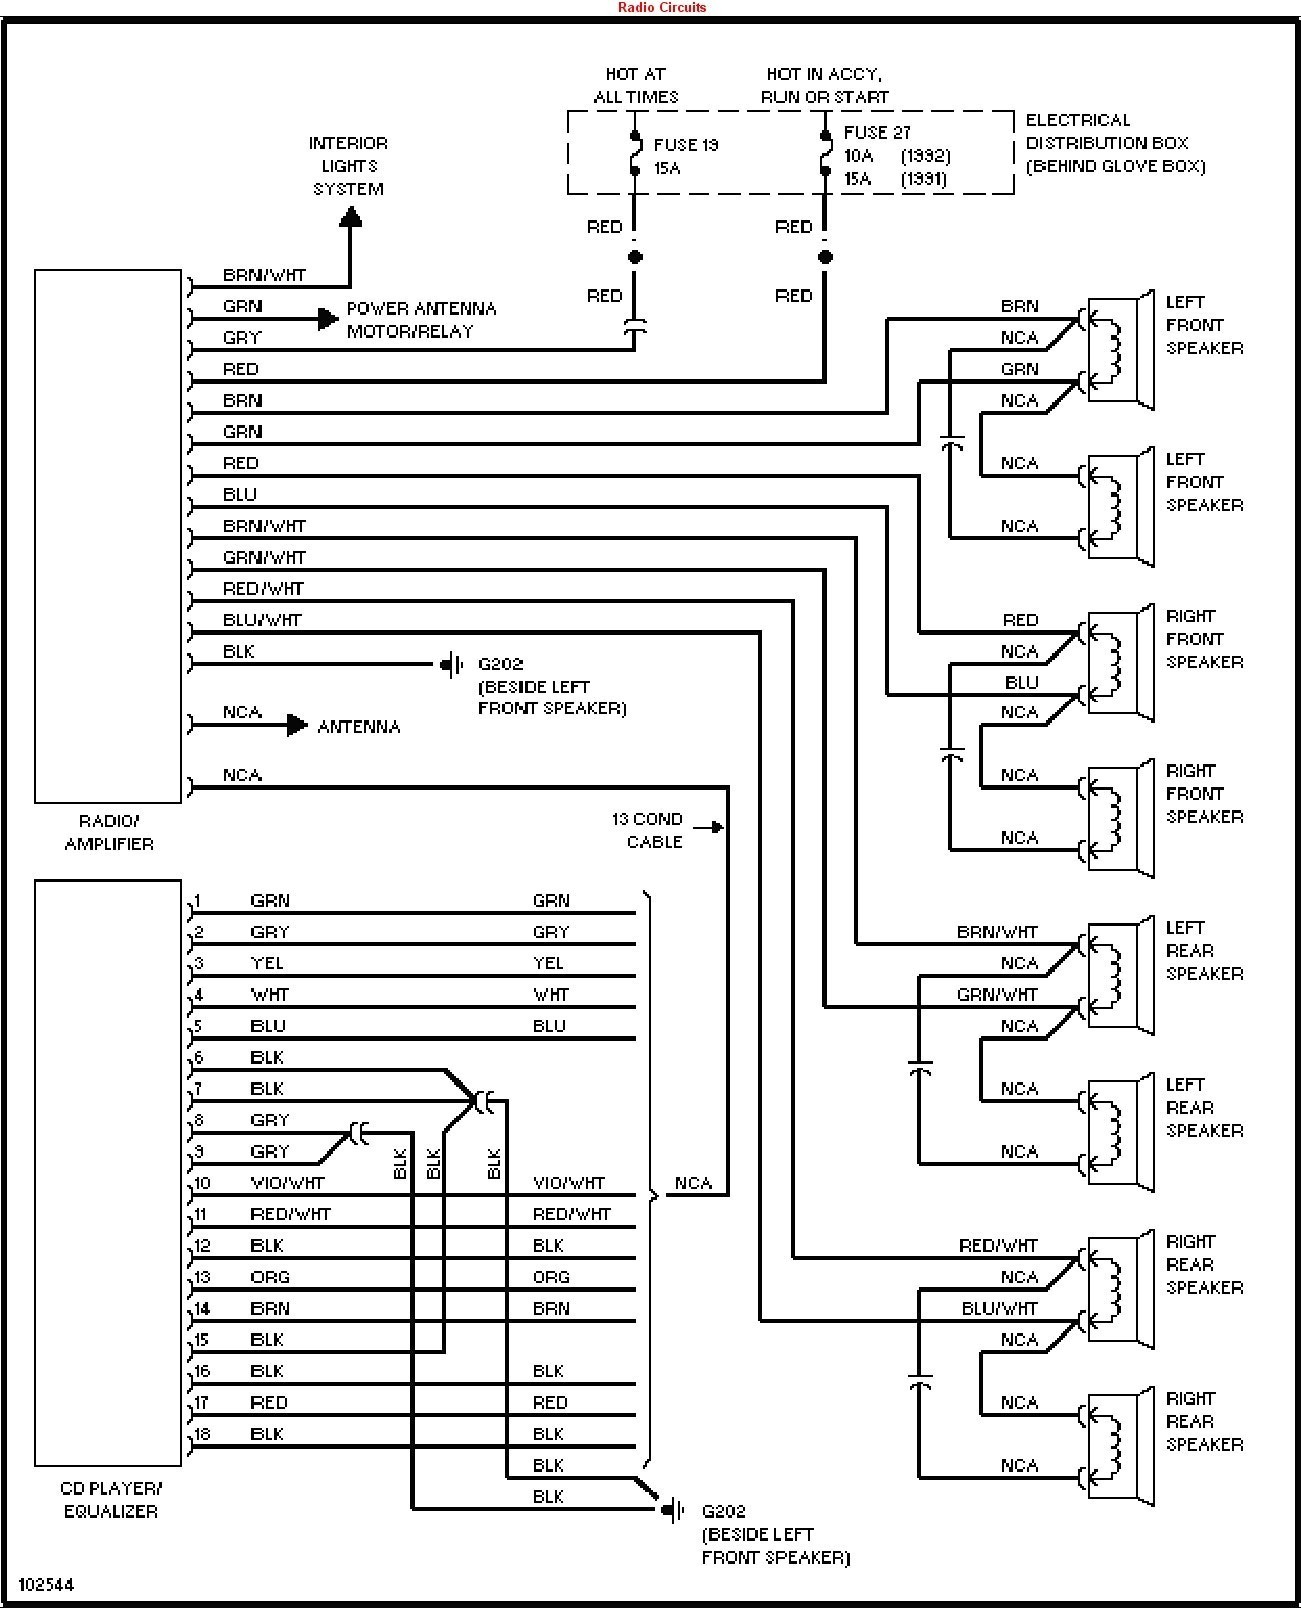 2002 Dodge Intrepid Engine Diagram 2000 Dodge Intrepid Stereo Wiring Diagram Wiring Diagram Will Be A Of 2002 Dodge Intrepid Engine Diagram